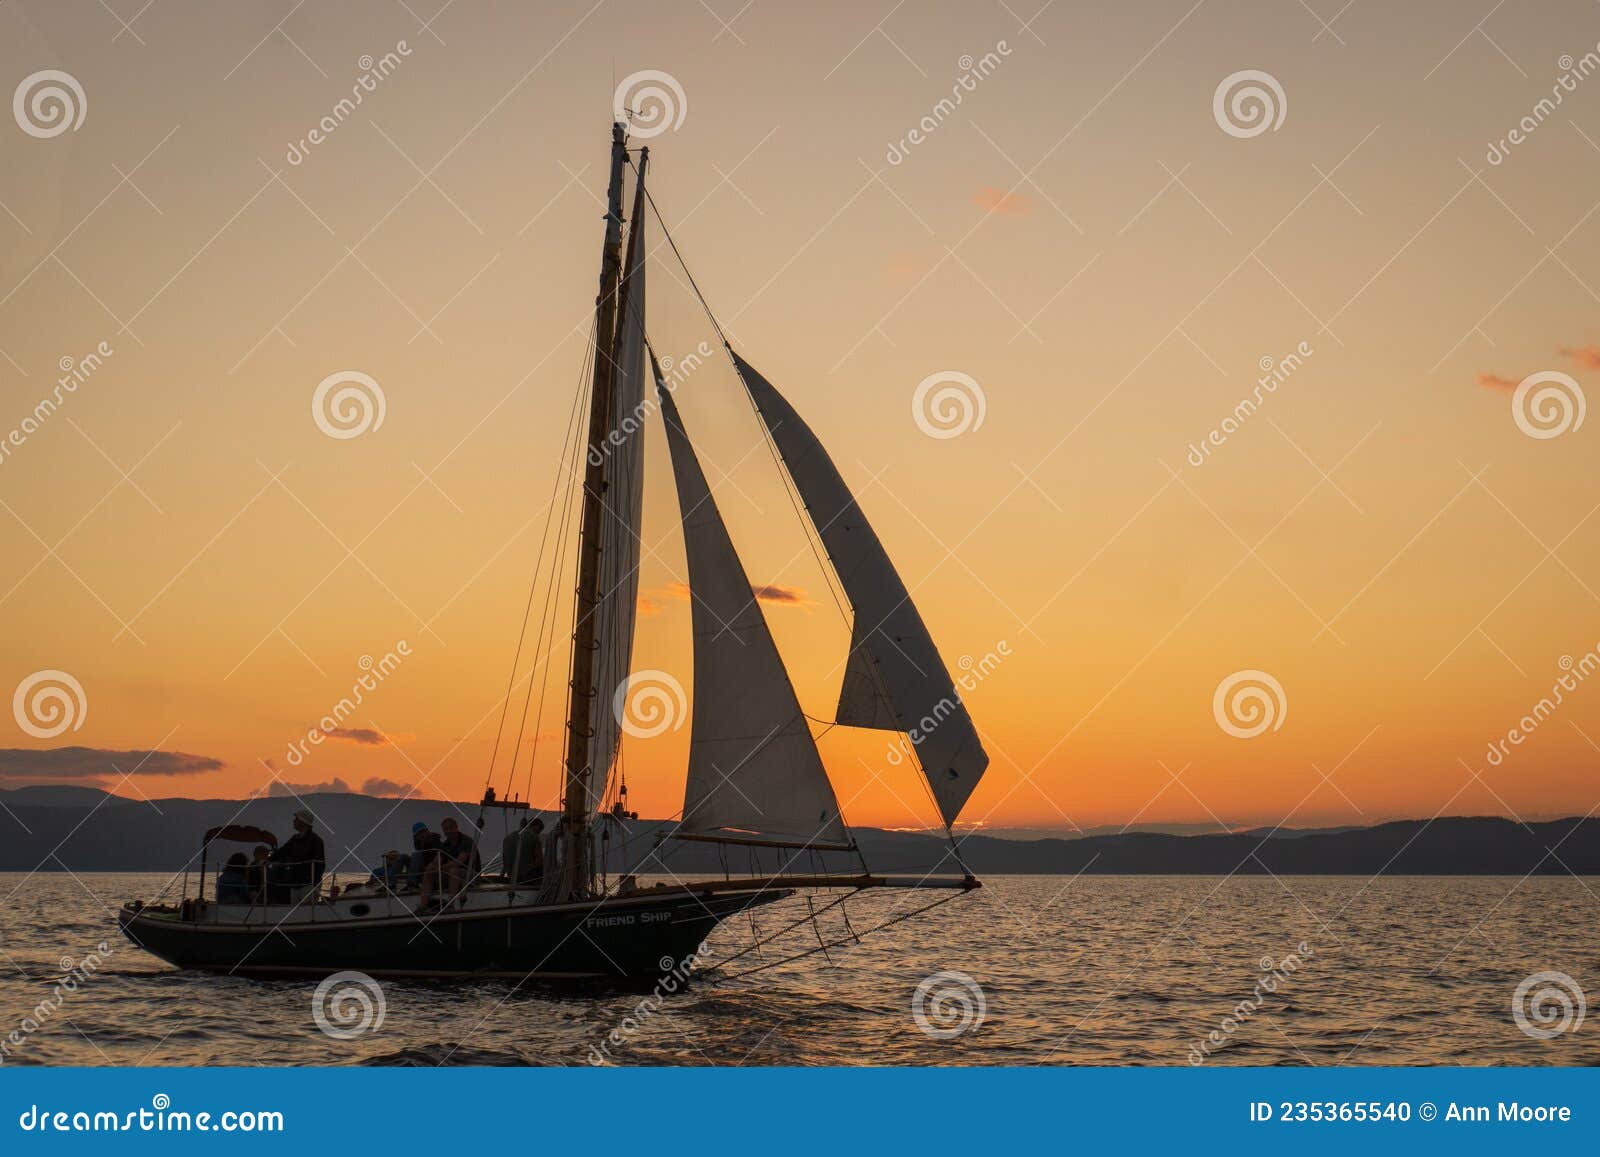 gaff-rigged sloop at sunset